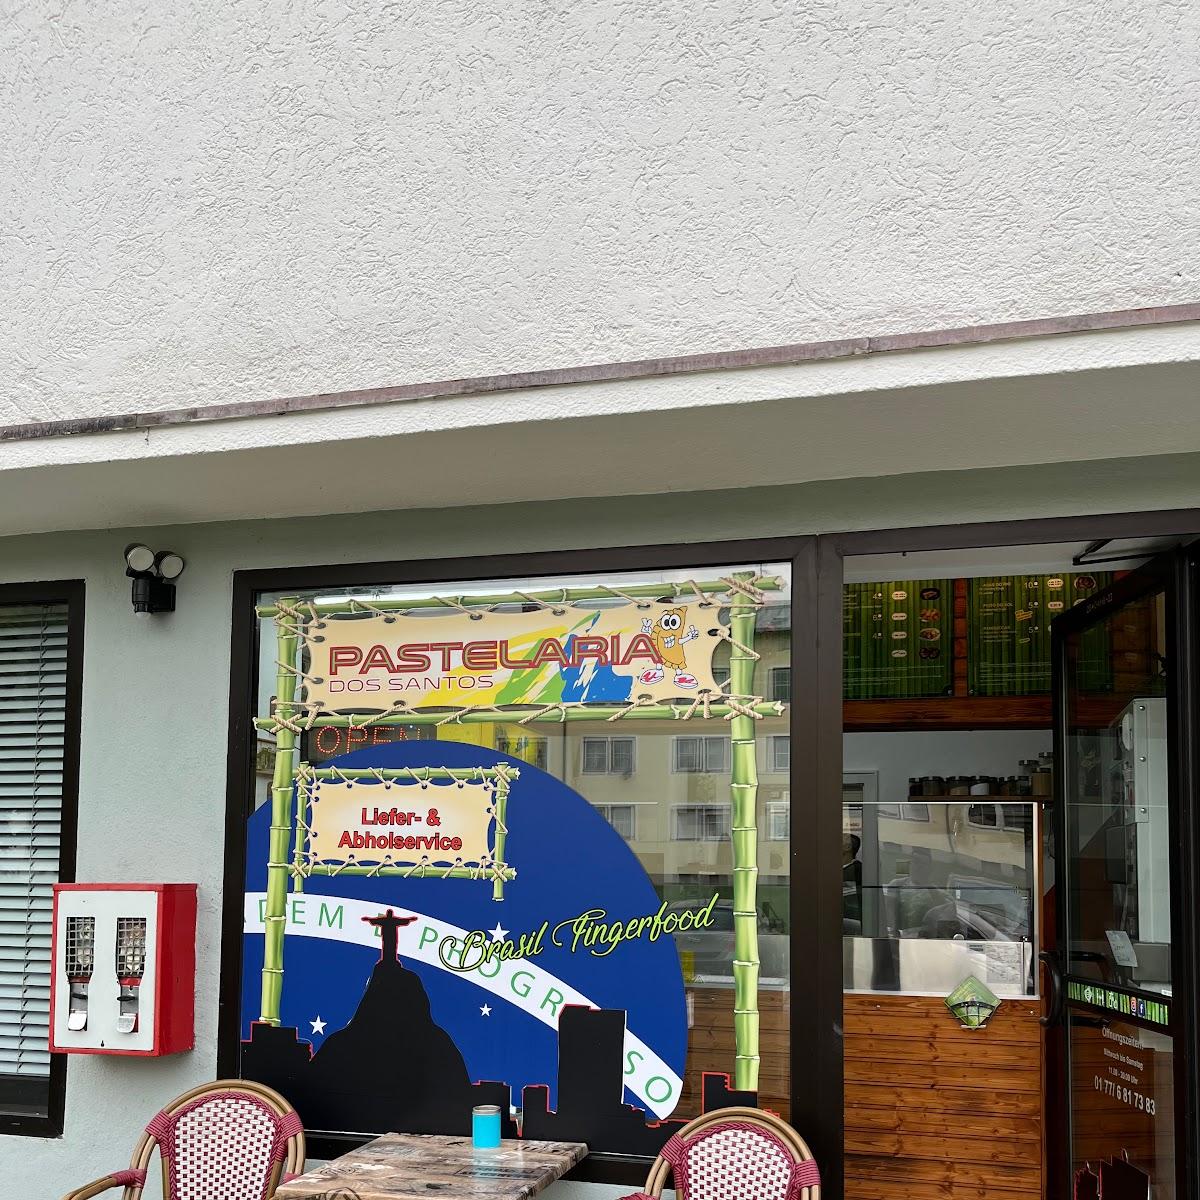 Restaurant "Pastelaria Dos Santos" in Amberg